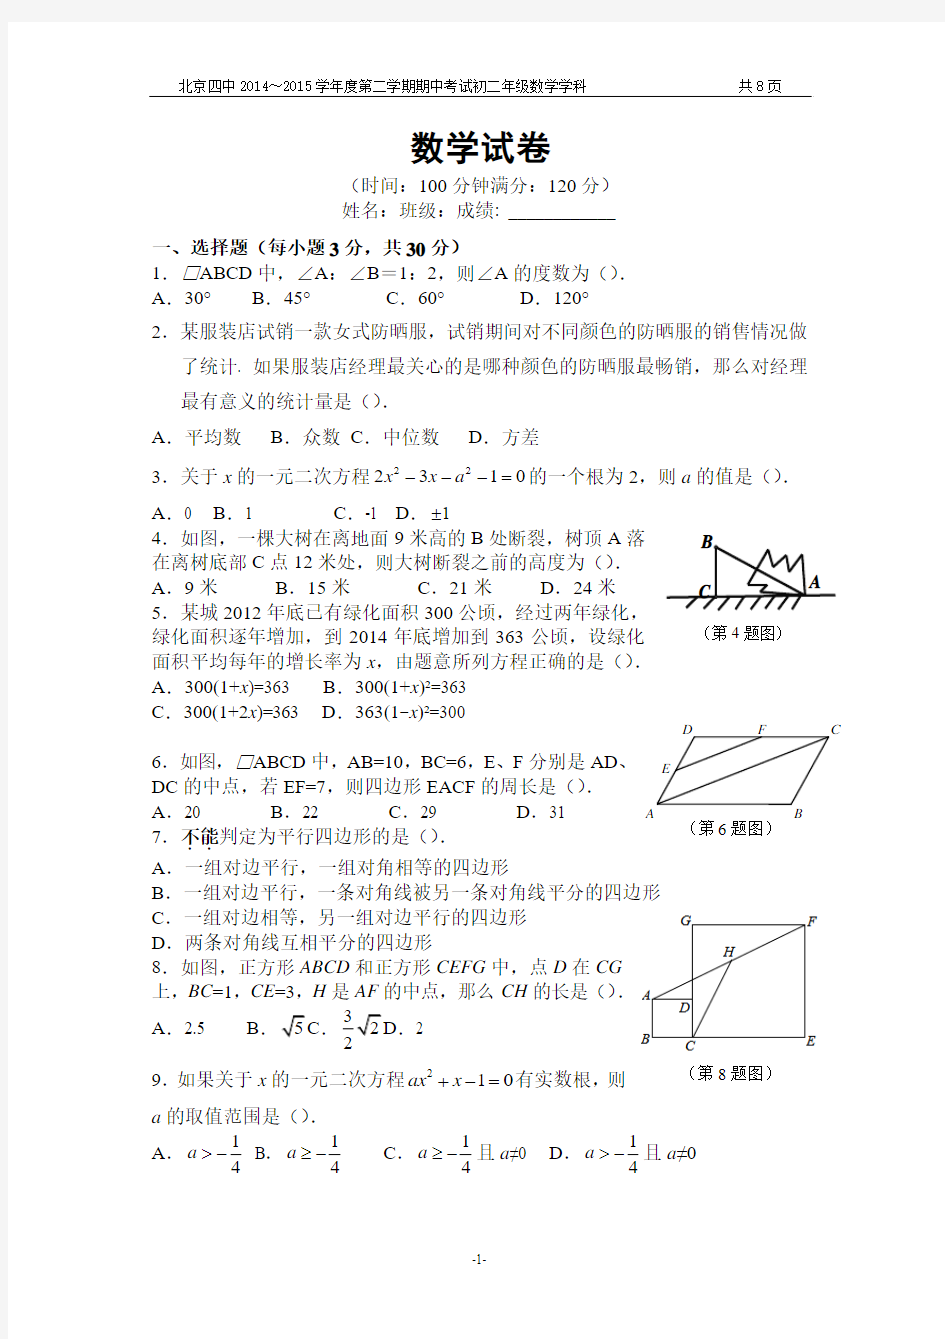 北京四中2014～2015学年度第二学期期中考试初二年级数学学科试题及答案